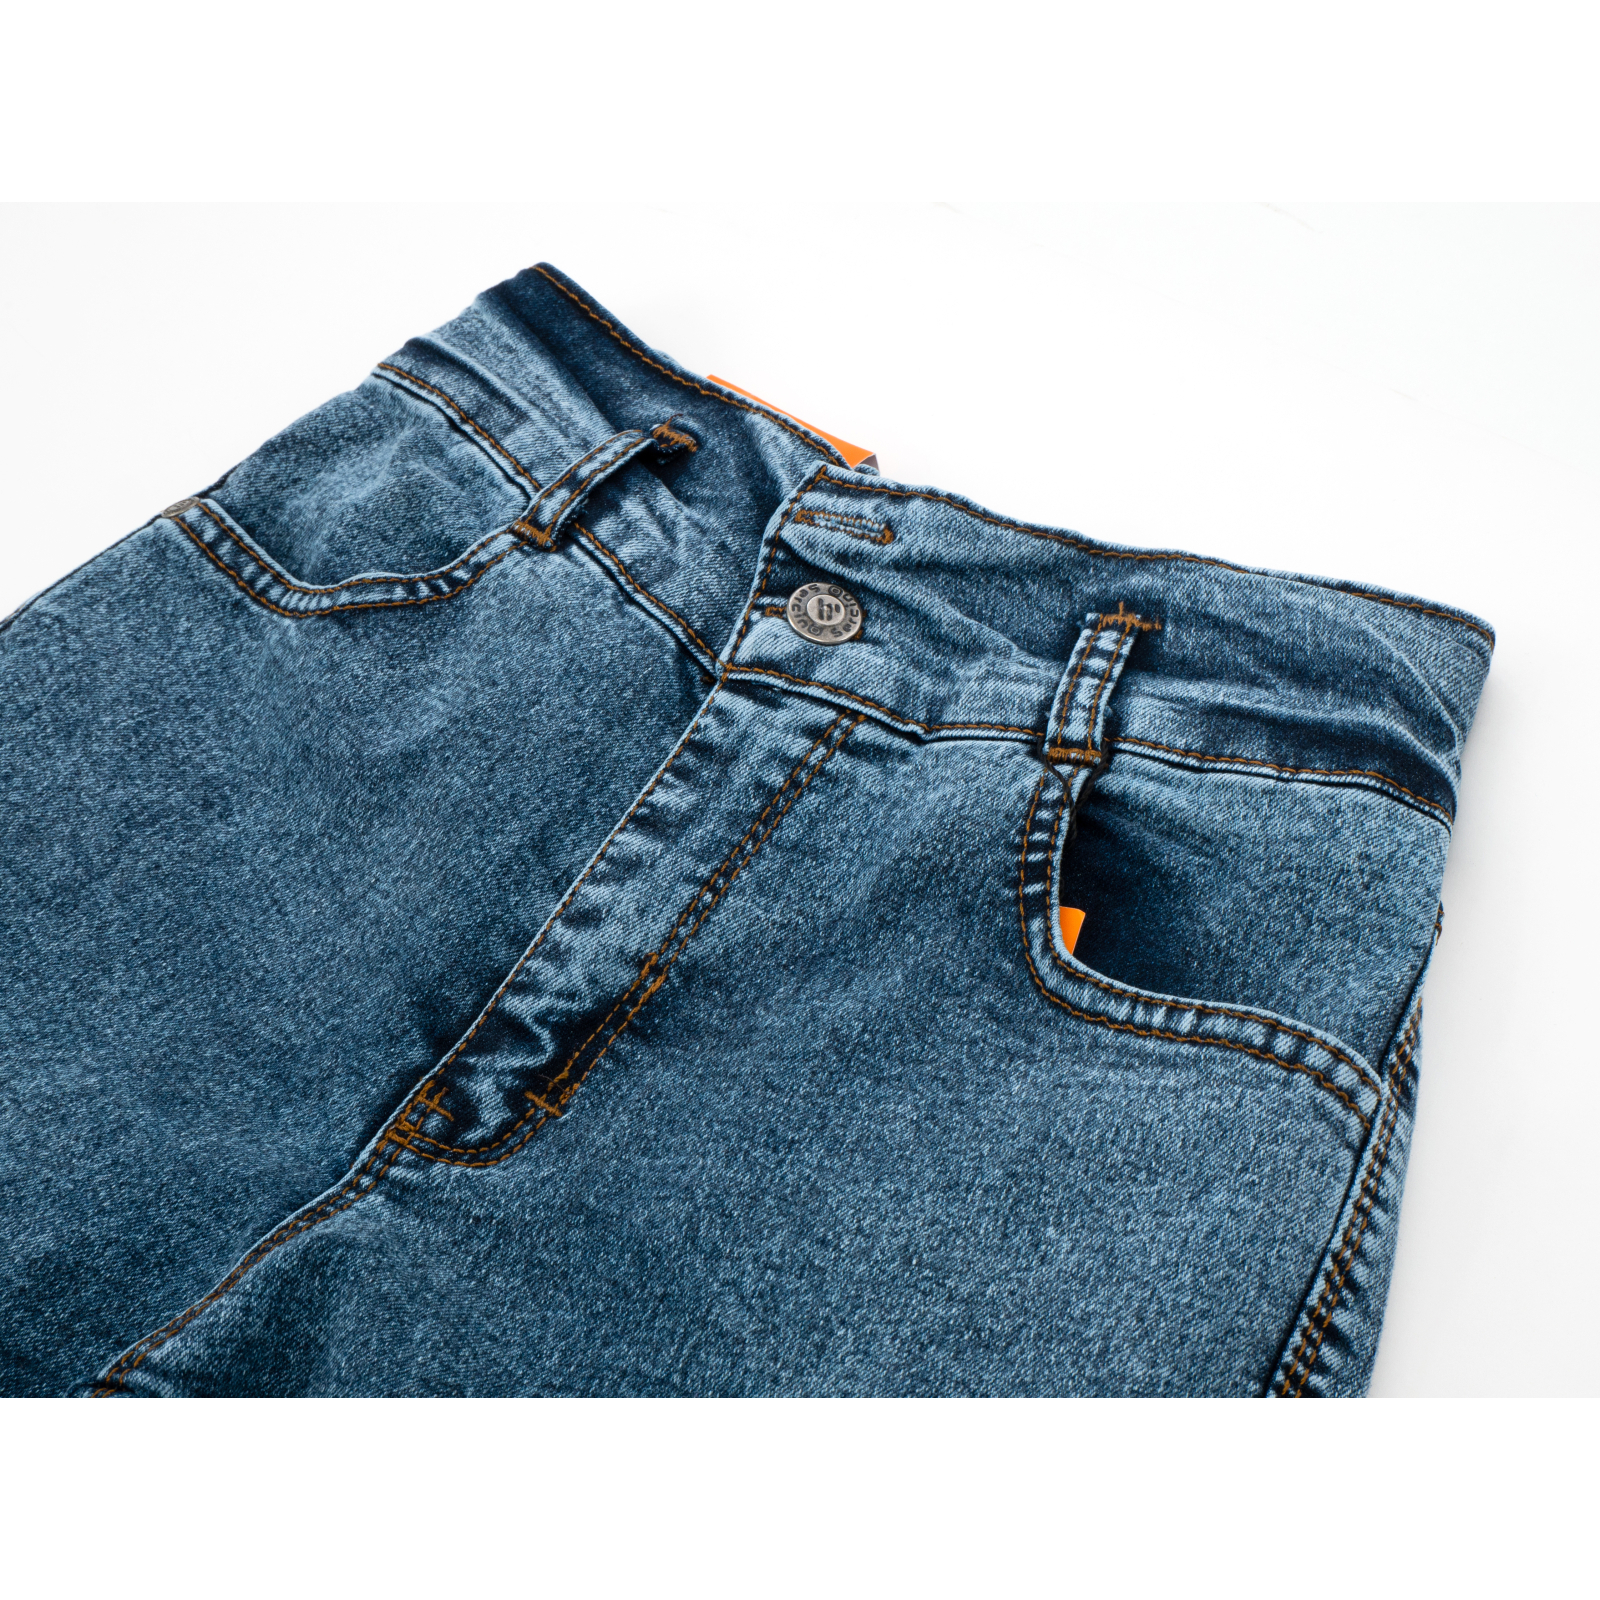 Джинсы Sercino с карманами (59654-146G-blue) изображение 3